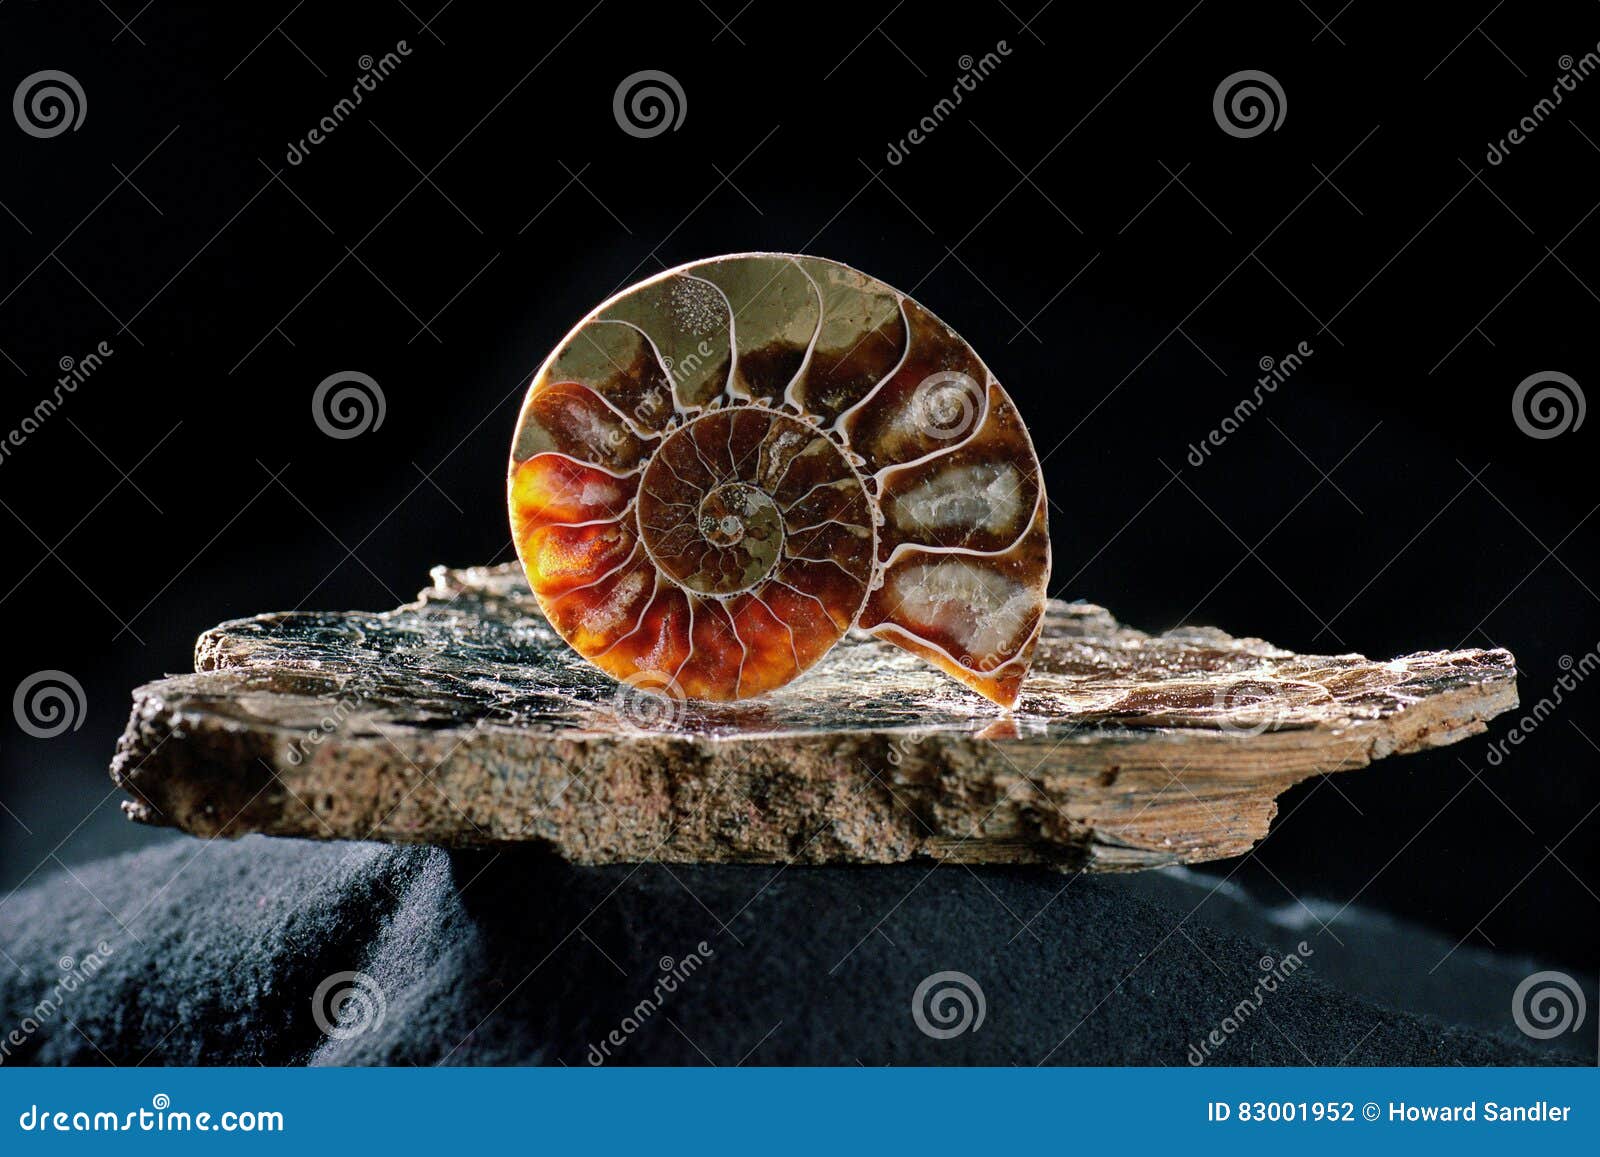 ammonite on mica